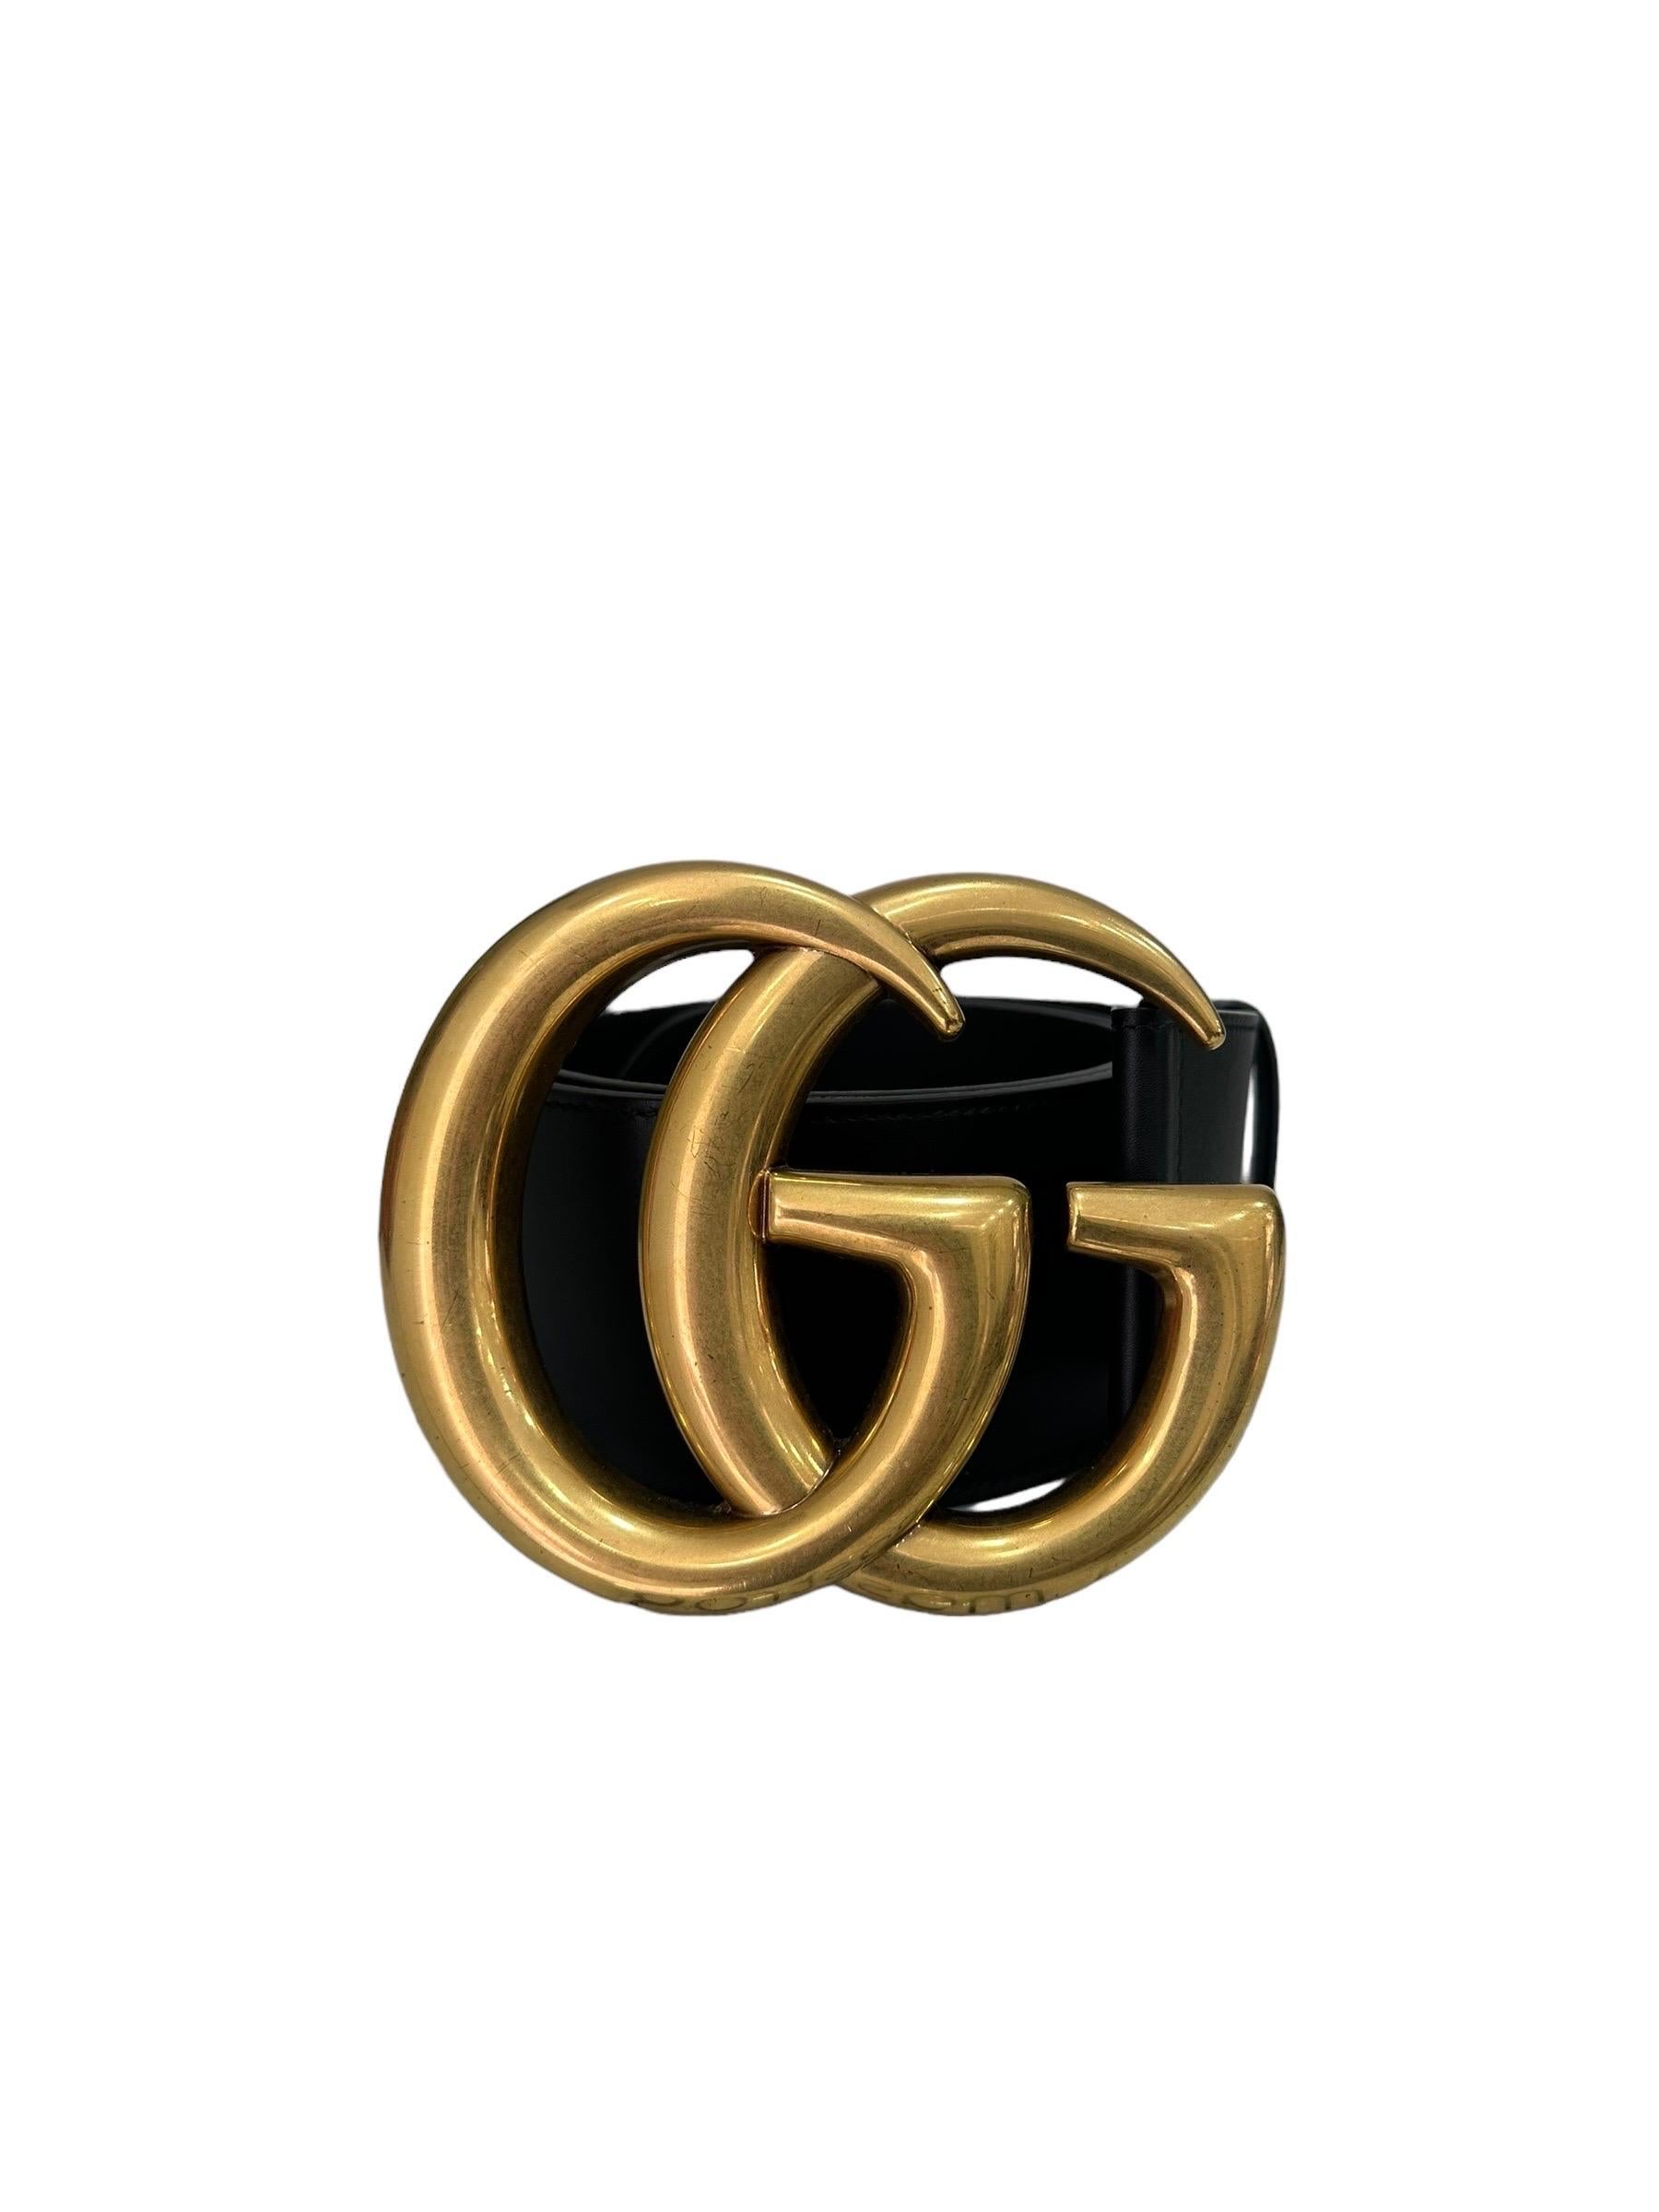 Cinturone firmato Gucci, linea Marmont, realizzati in pelle nera con hardware dorati. Misura 95 centimetri di lunghezza e 7 centimetri di altezza. Caratterizzato da fibbia GG frontale. Completa di scatolo e dustbag originale, si presenta in ottime